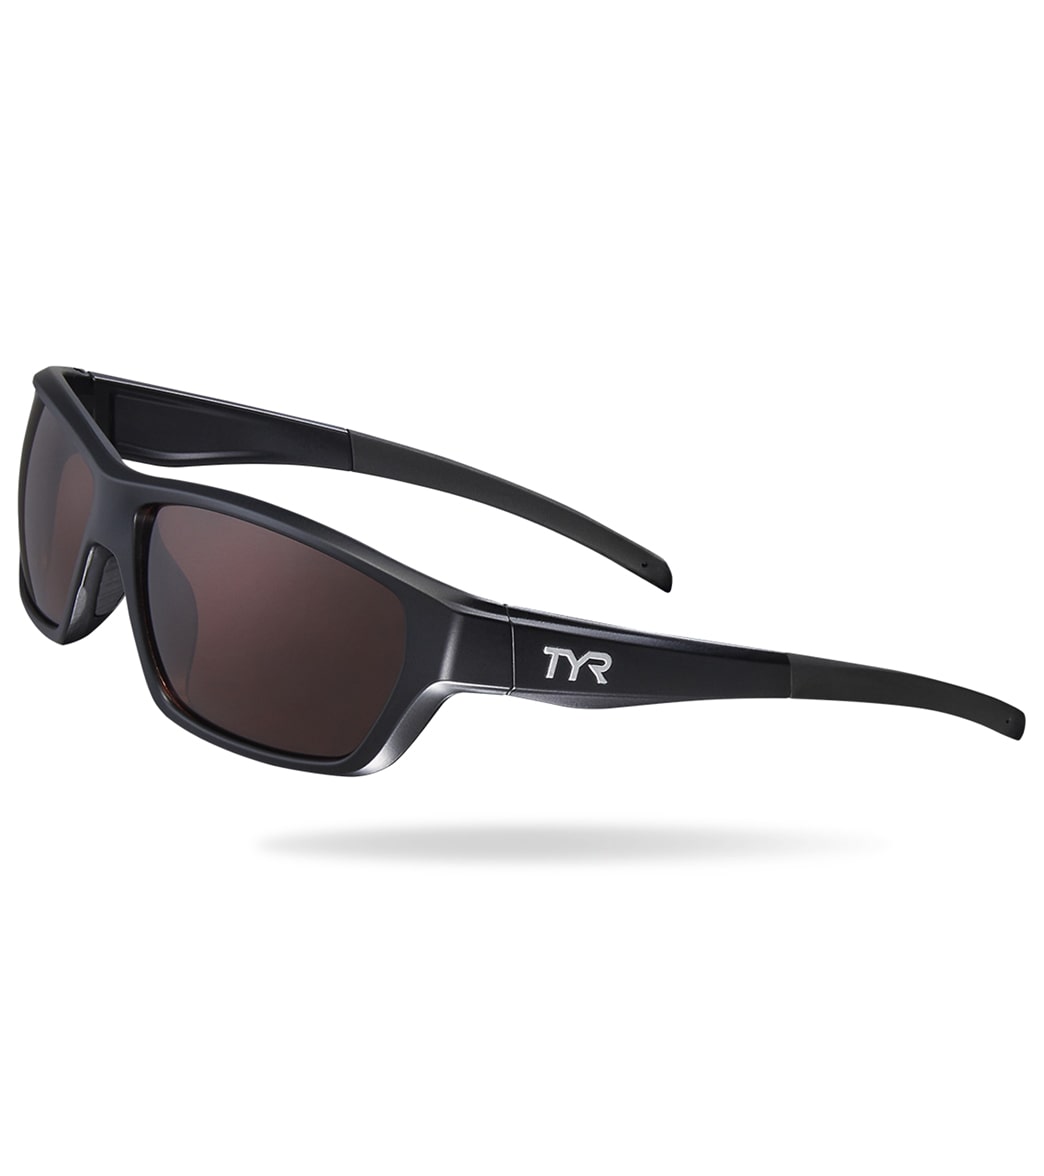 TYR Men's Cortez Sport Wrap Sunglasses - Brown/Black - Swimoutlet.com